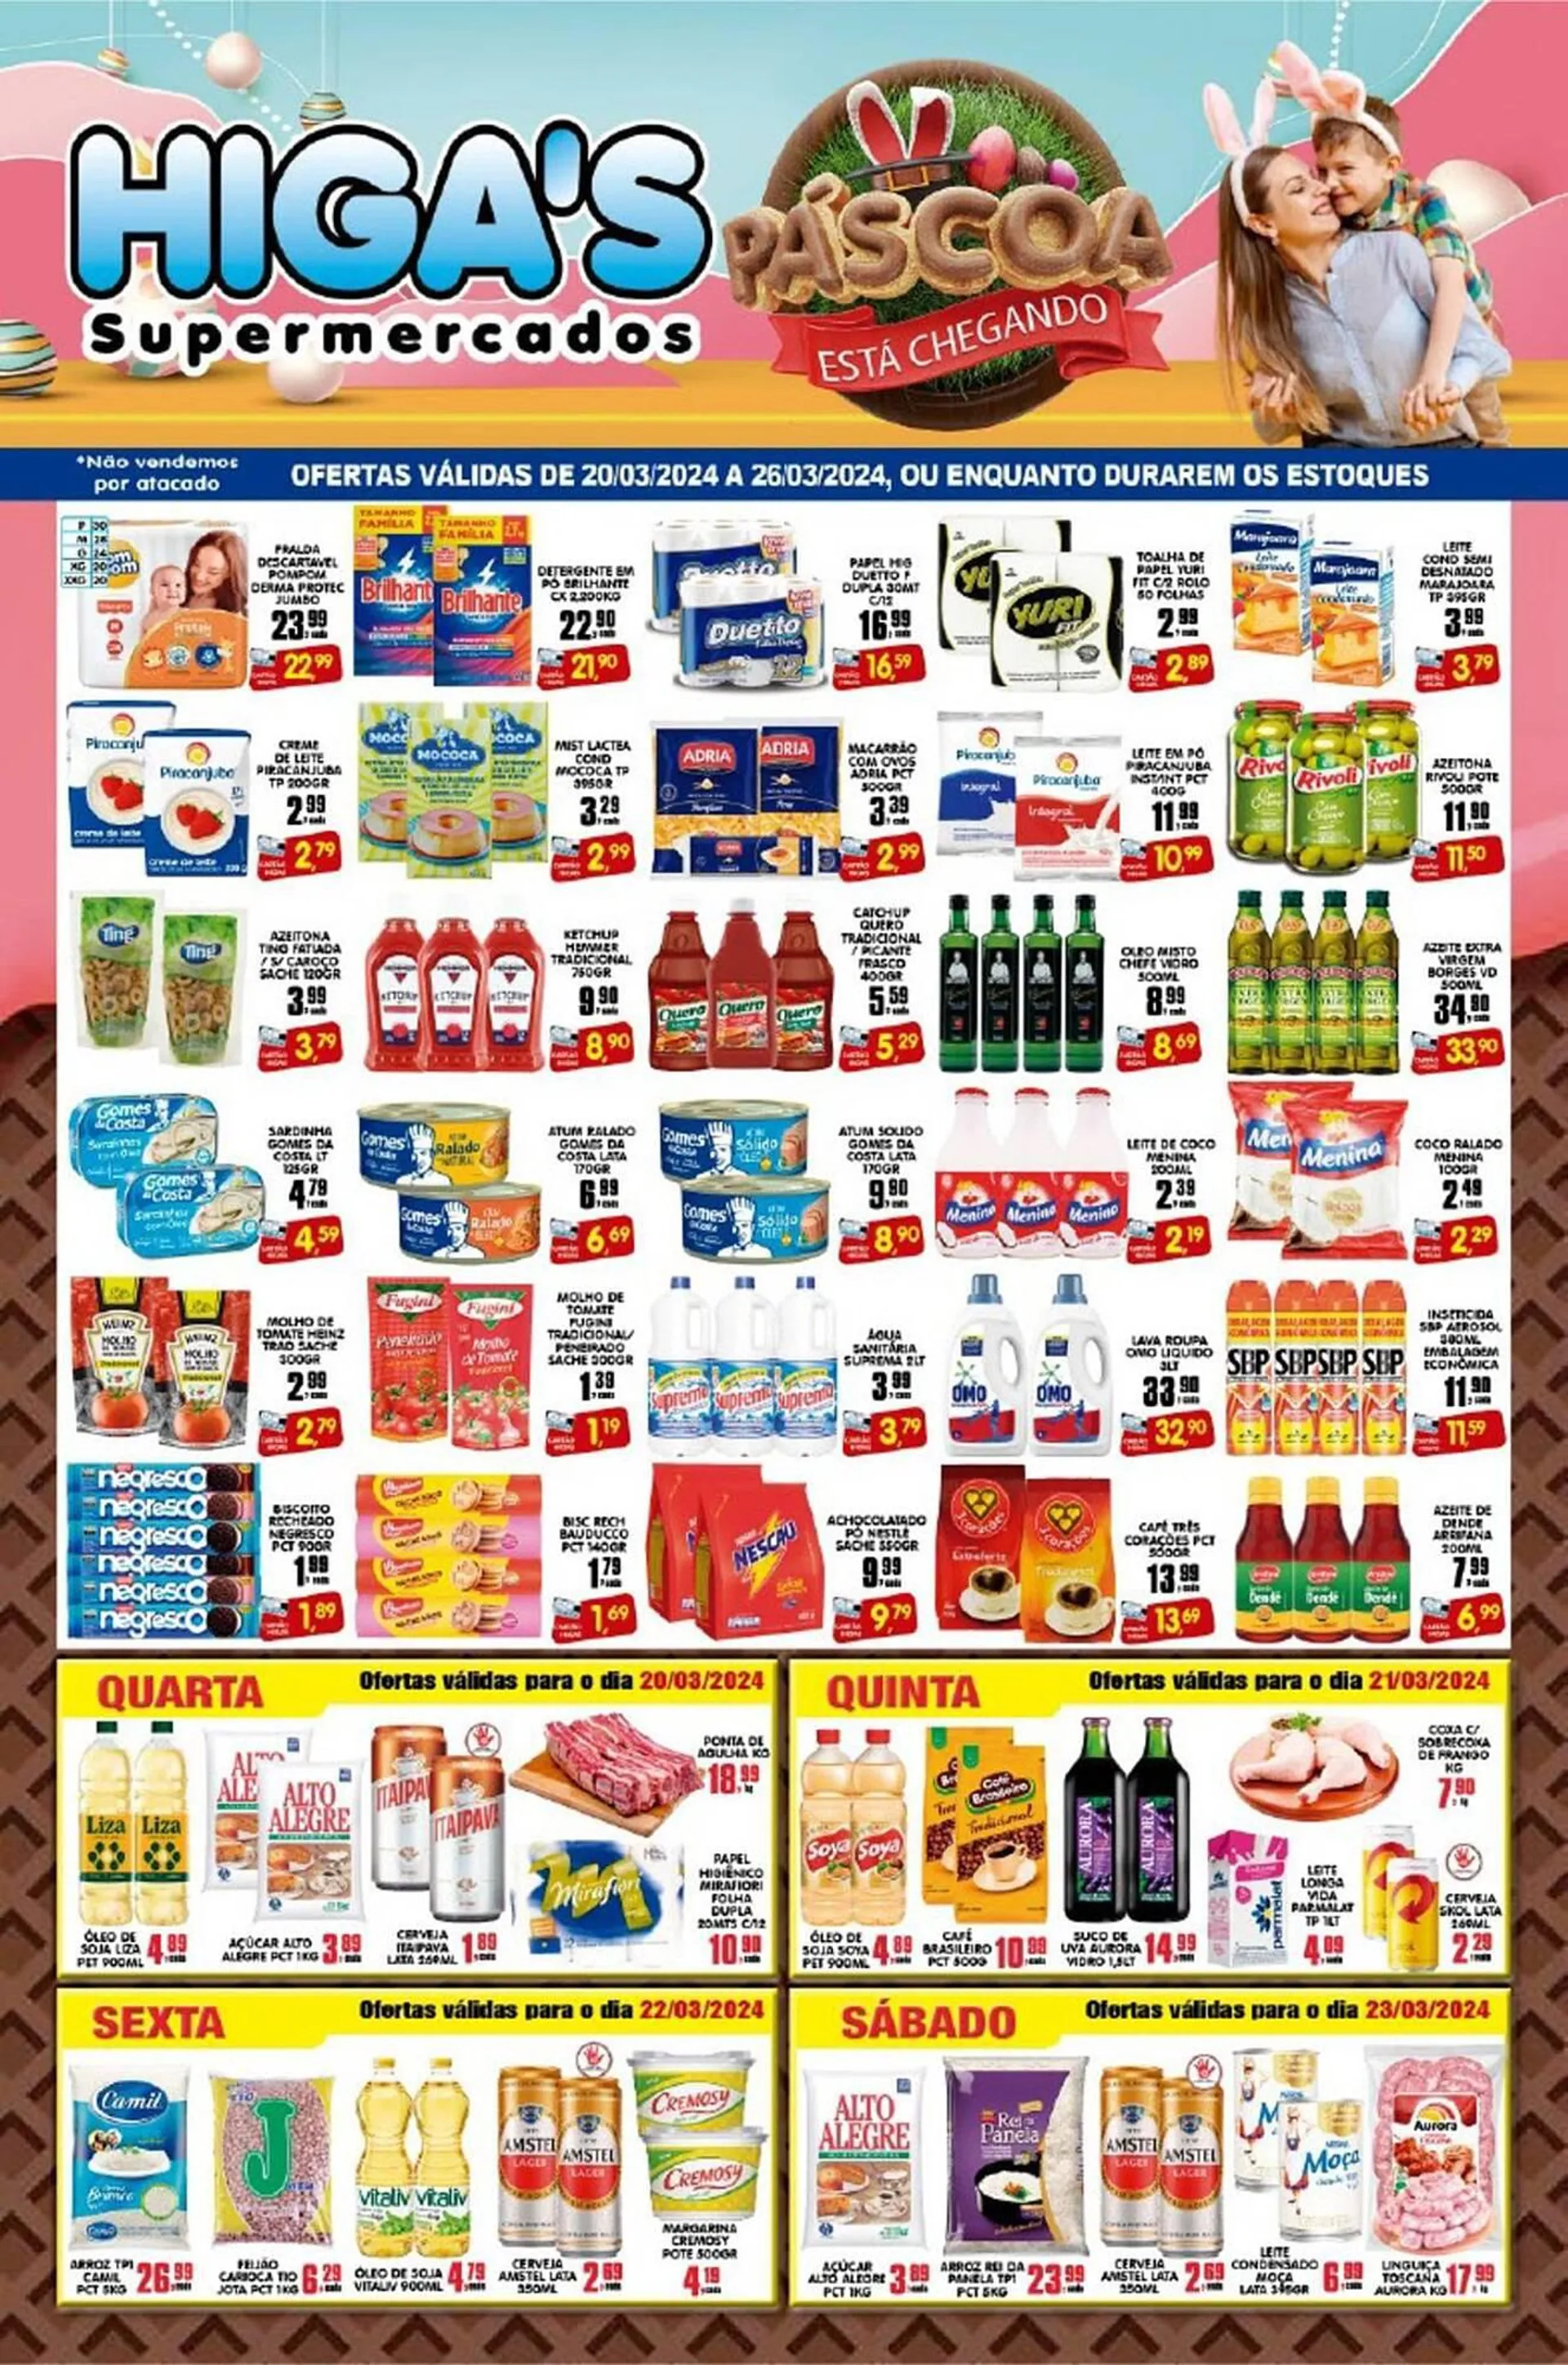 Encarte de Catálogo Higa's Supermercado 20 de março até 26 de março 2024 - Pagina 